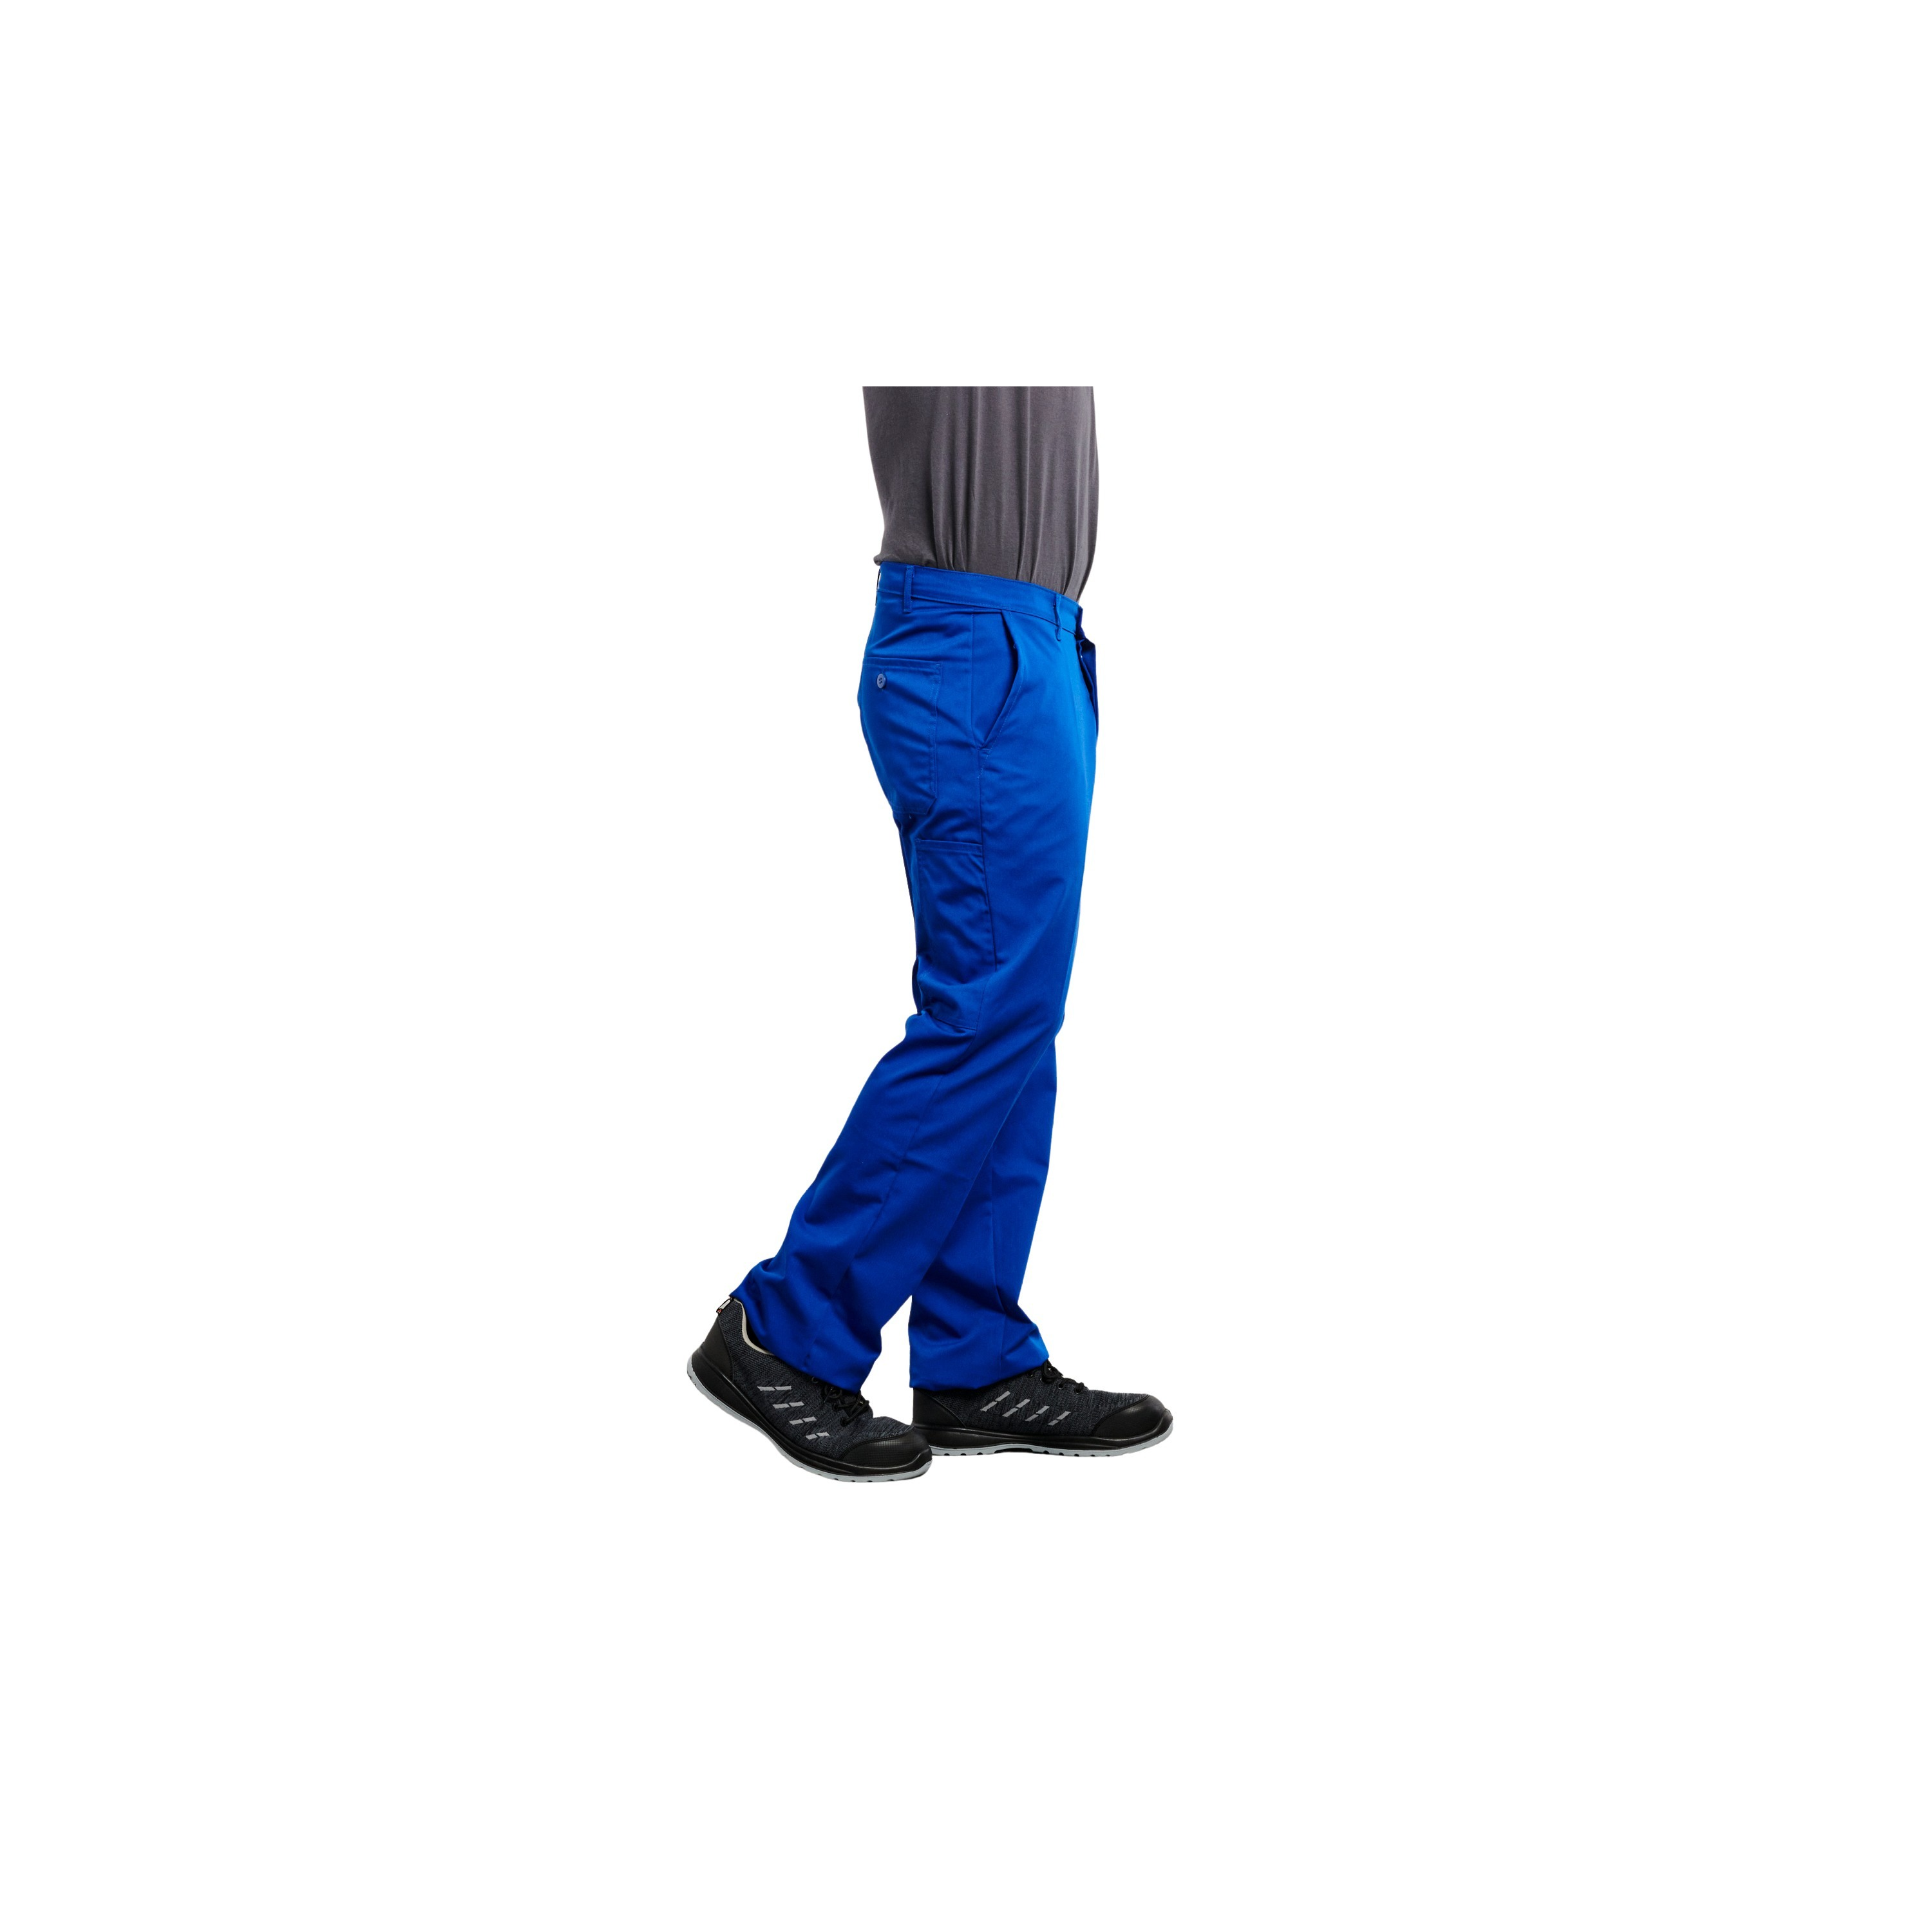 Pantalon de peintre panton bleu de travail pas cher 15,50€ LISAVET